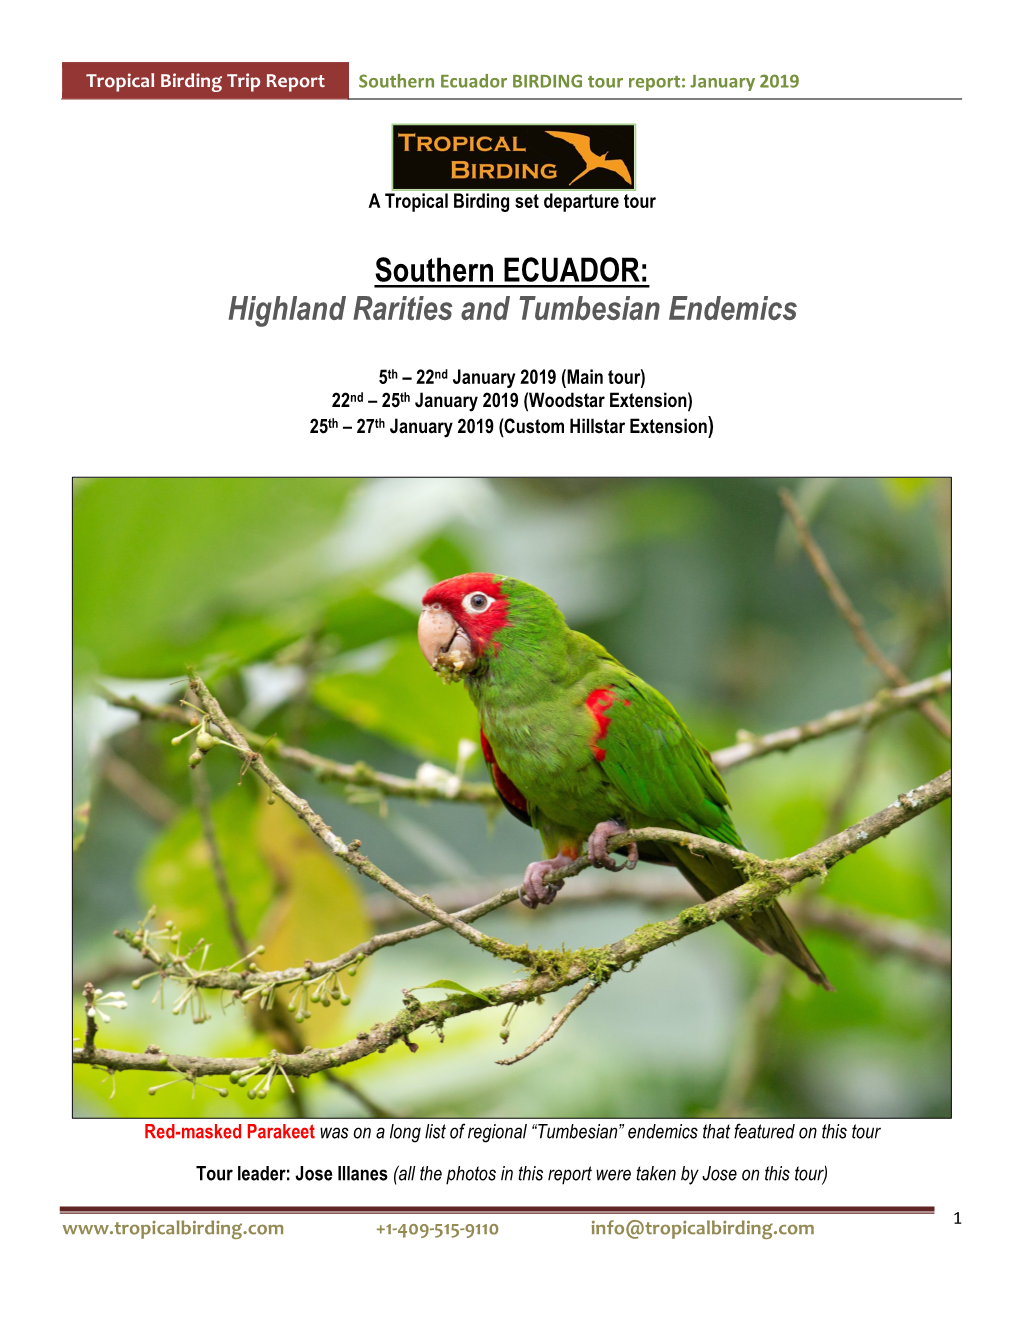 Southern Ecuador BIRDING Tour Report: January 2019